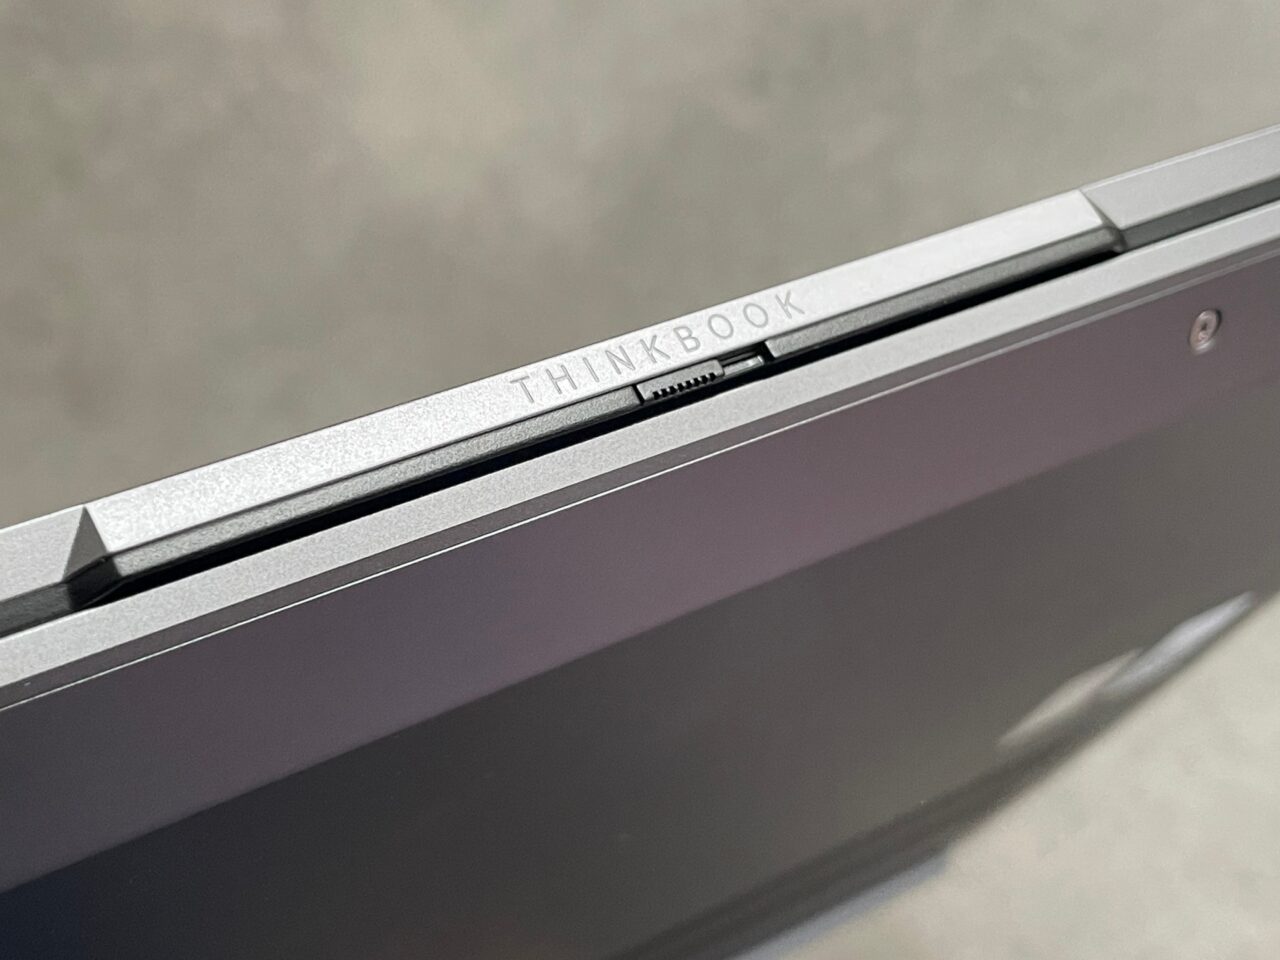 Zbliżenie na narożnik srebrnego laptopa z wygrawerowanym napisem "THINKBOOK" na zawiasie obok kamerki internetowej.